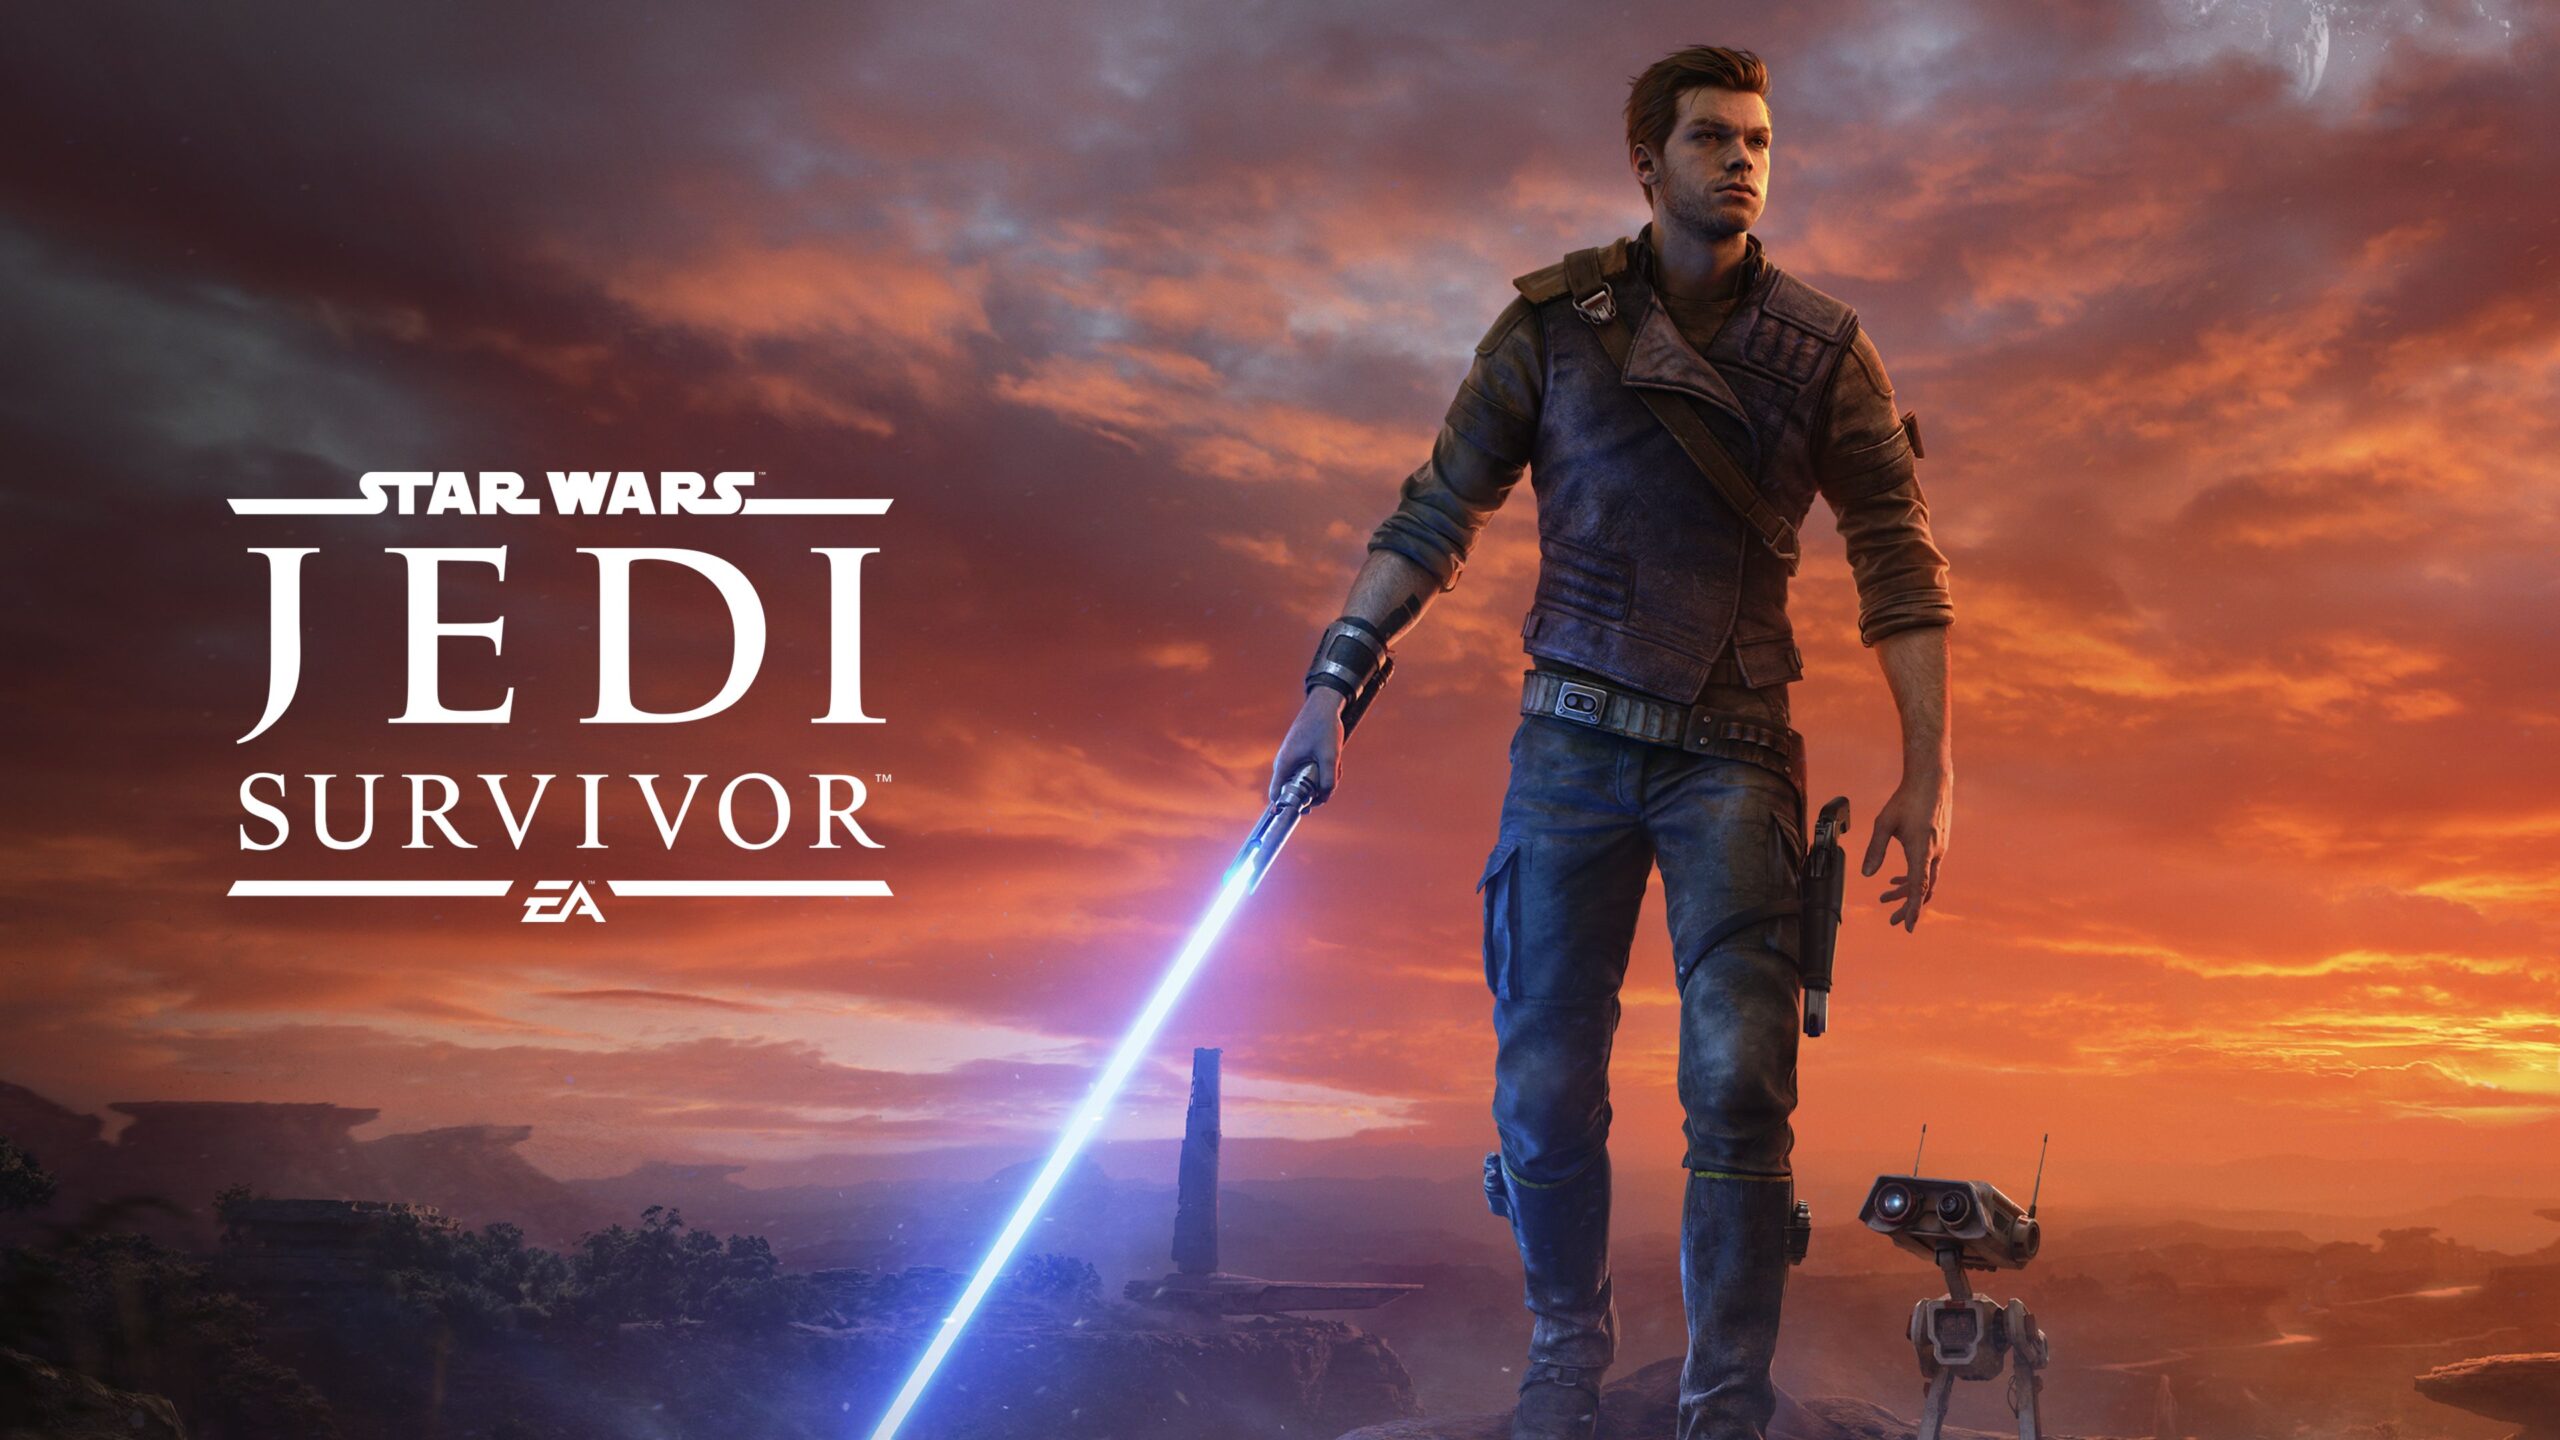 Star Wars Jedi: Survivor ahora disponible para pre-pedido en la tienda de Xbox